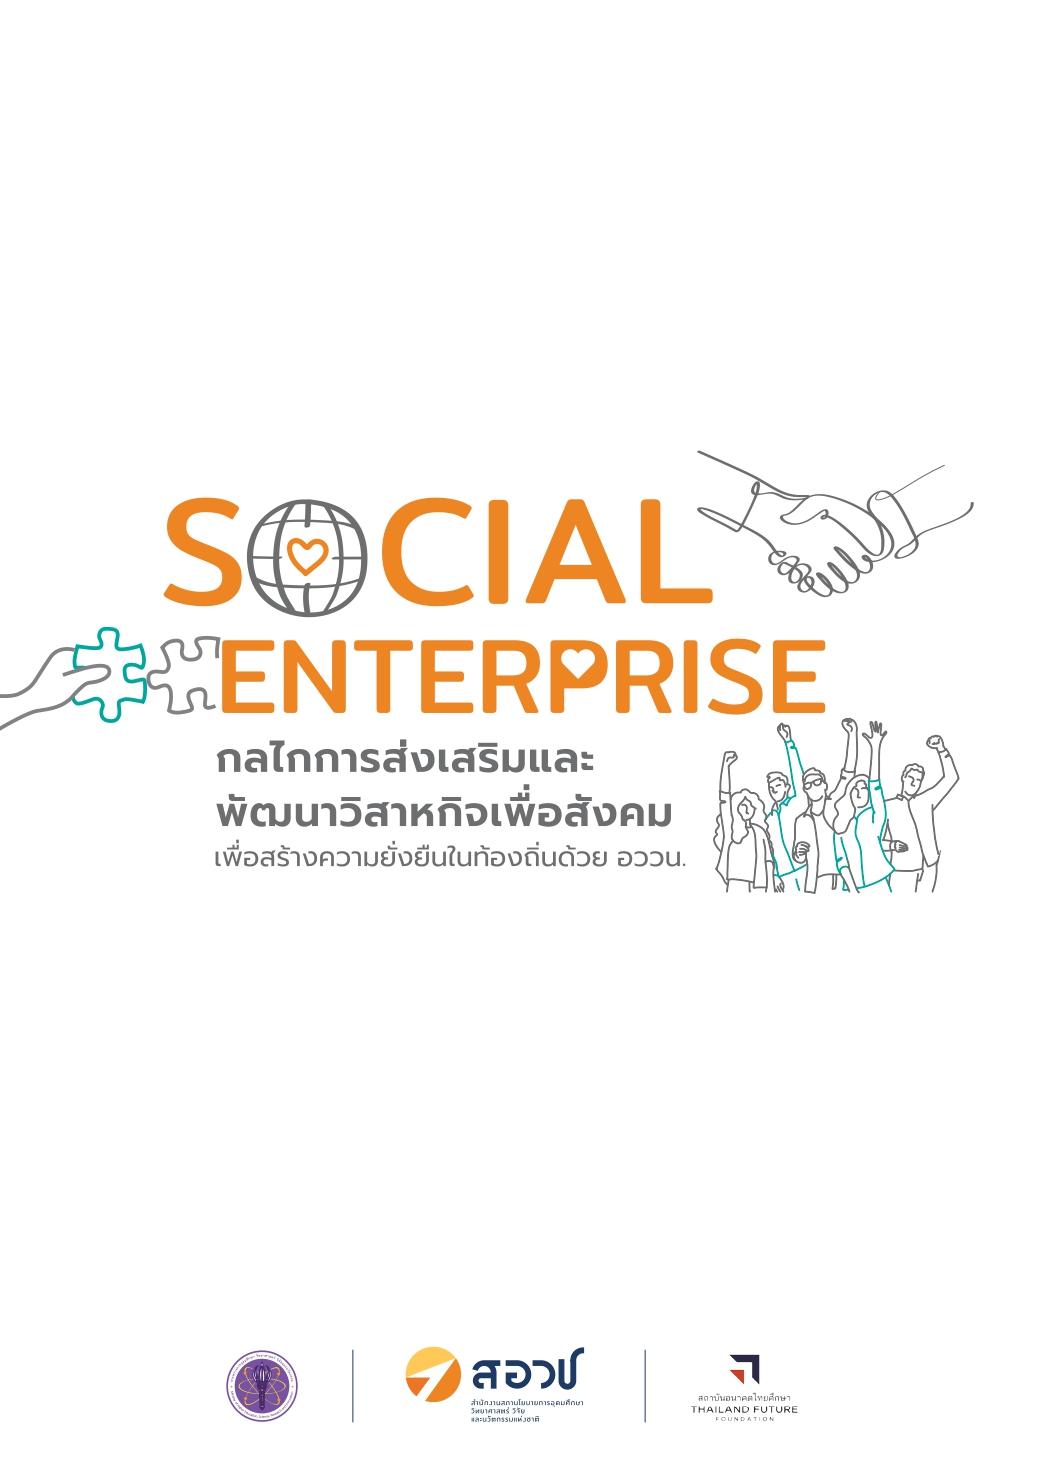 Social Enterprise กลไกการส่งเสริมและพัฒนาวิสาหกิจเพื่อสังคม เพื่อสร้างความยั่งยืนในท้องถิ่นด้วย อววน.